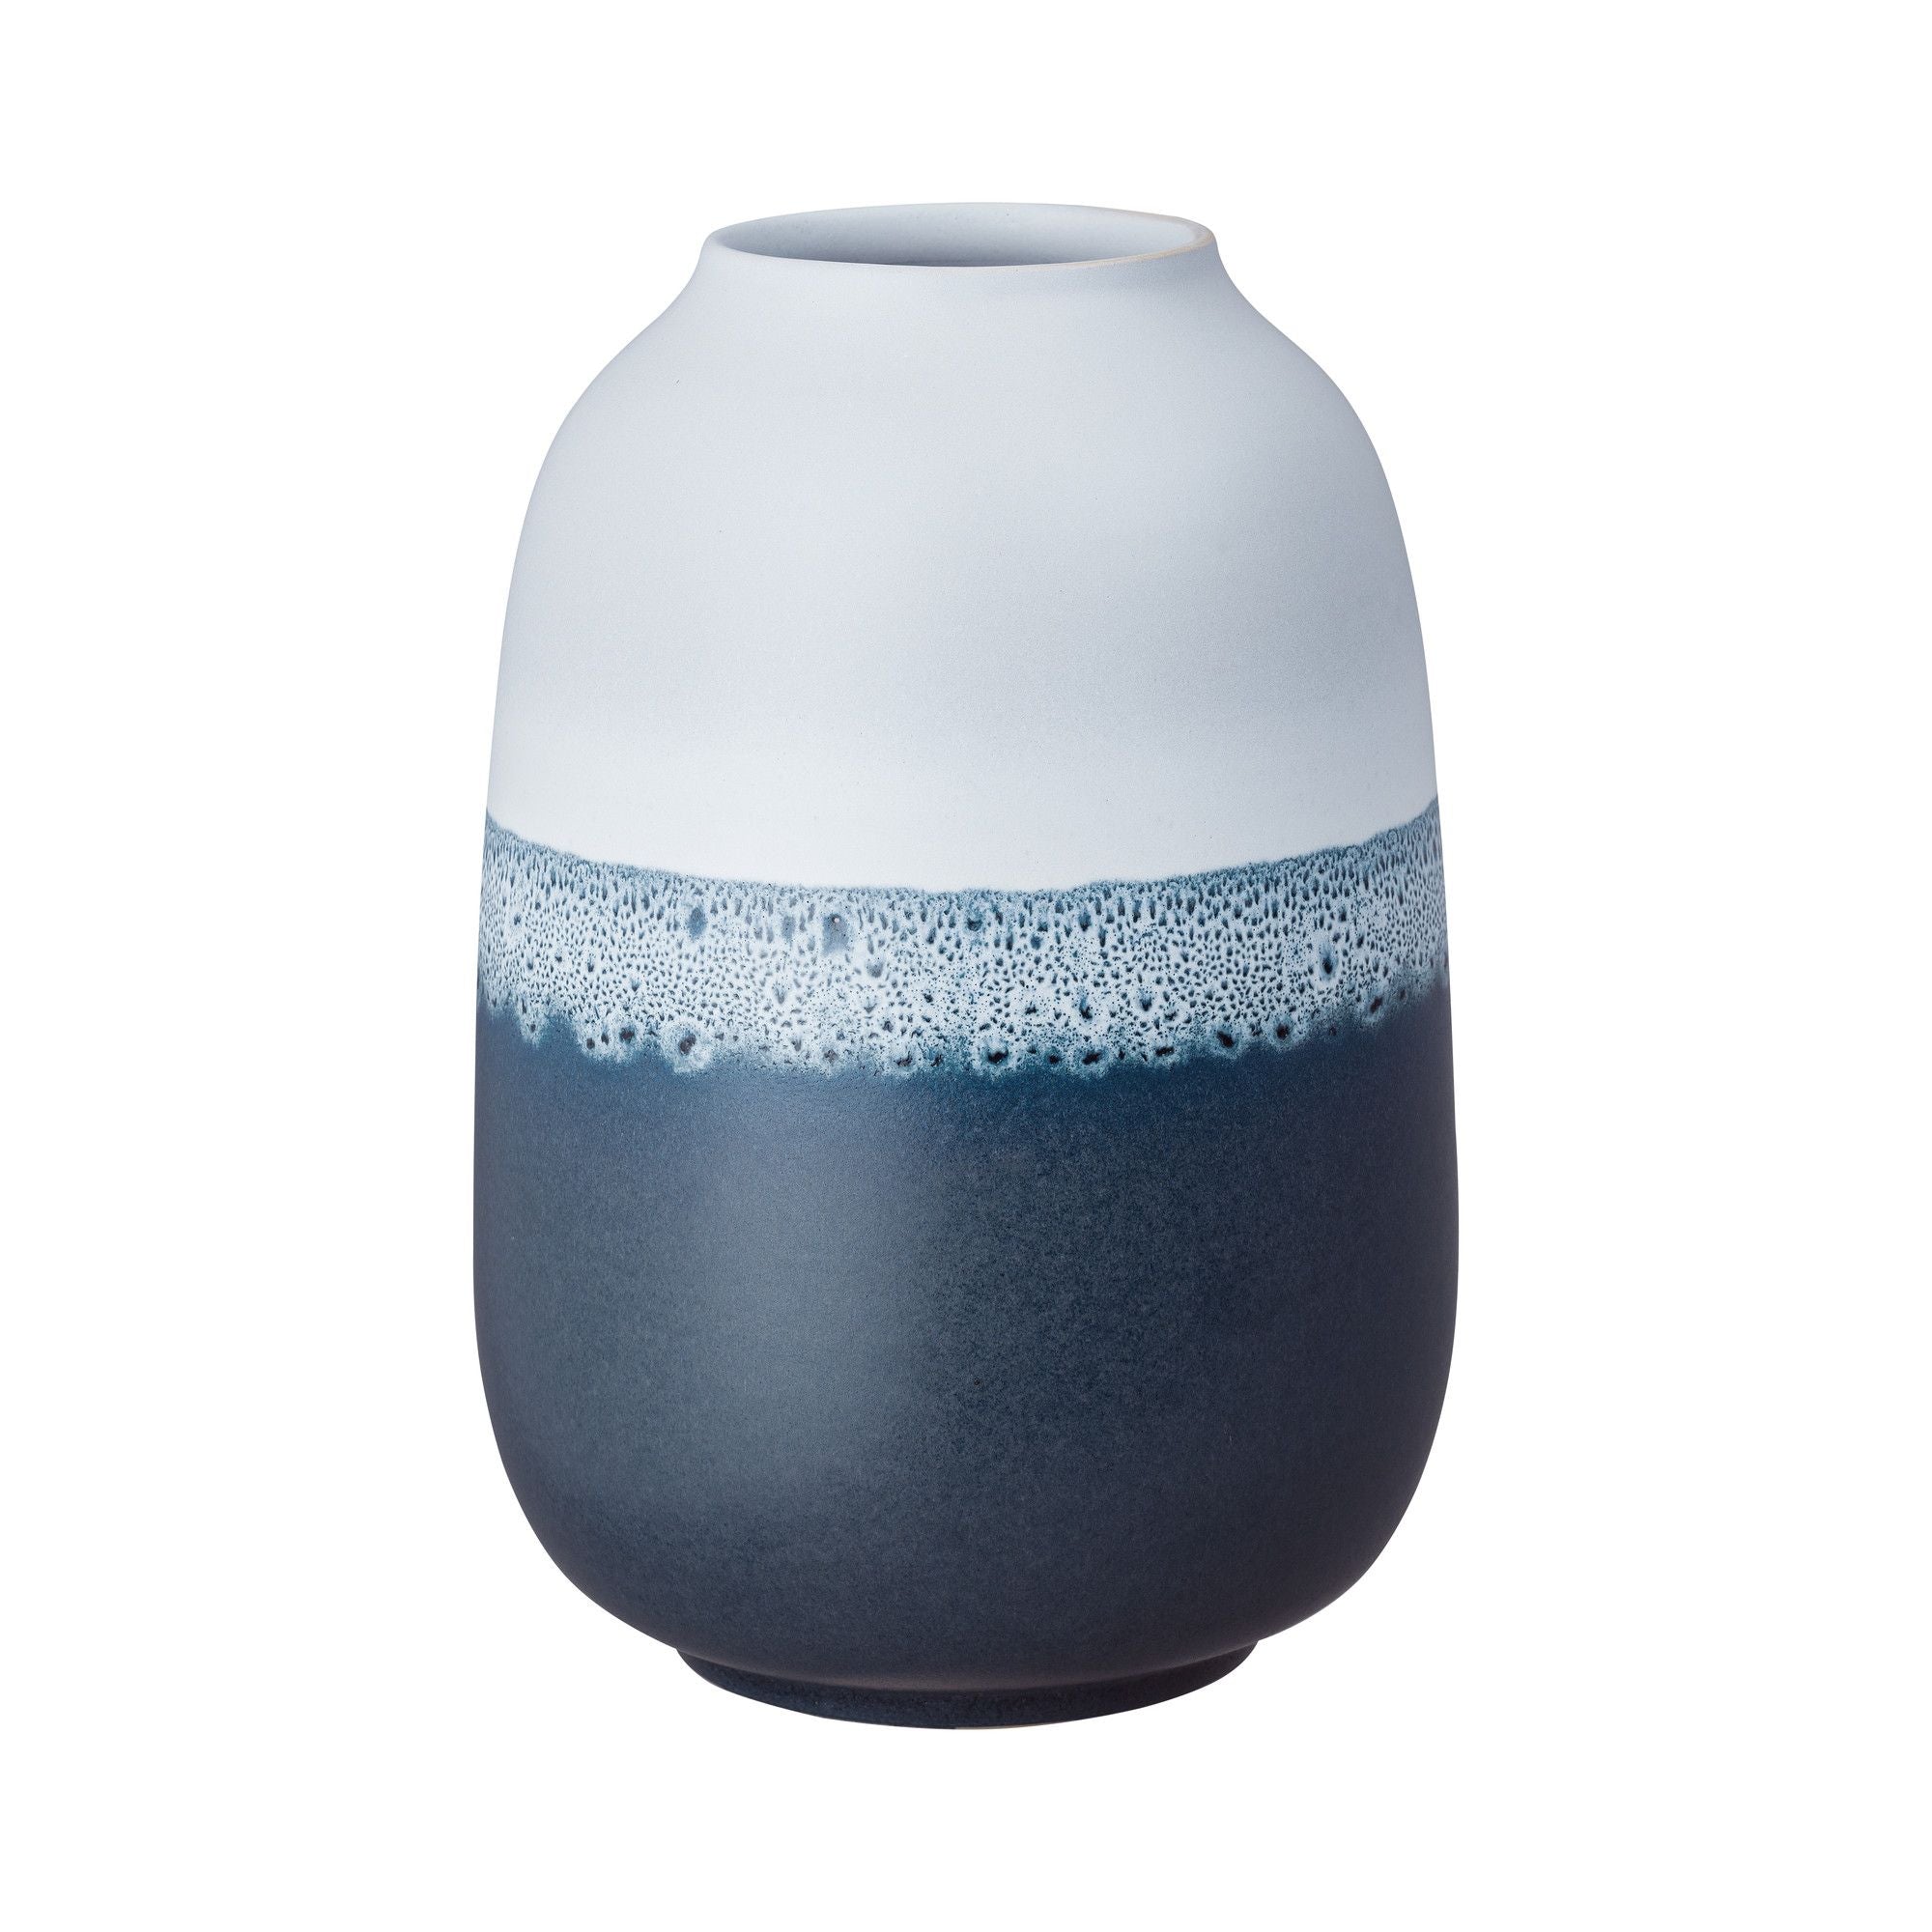 Denby Mineral Blue Large Barrel Vase